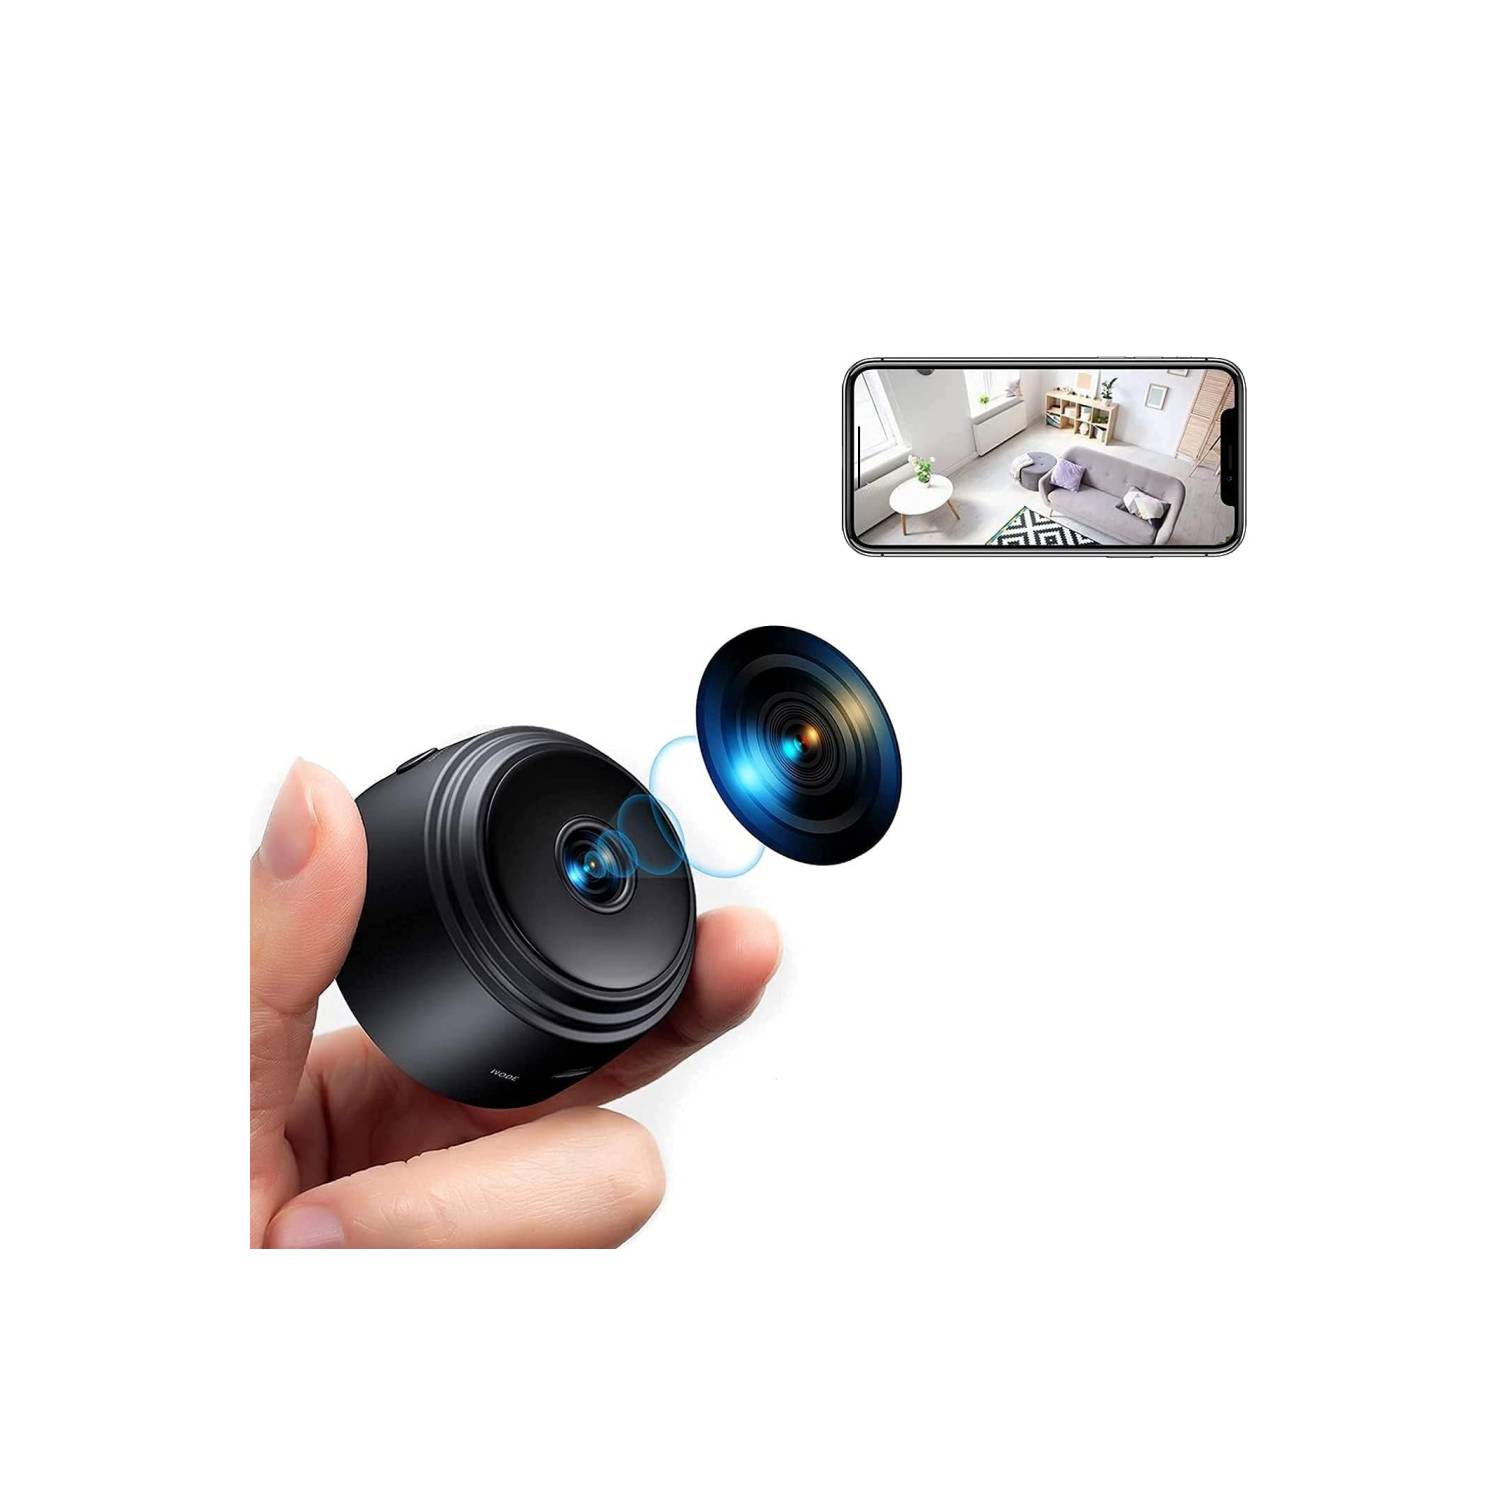 Mini cámara espía HD cámara oculta WiFi cámaras de vigilancia